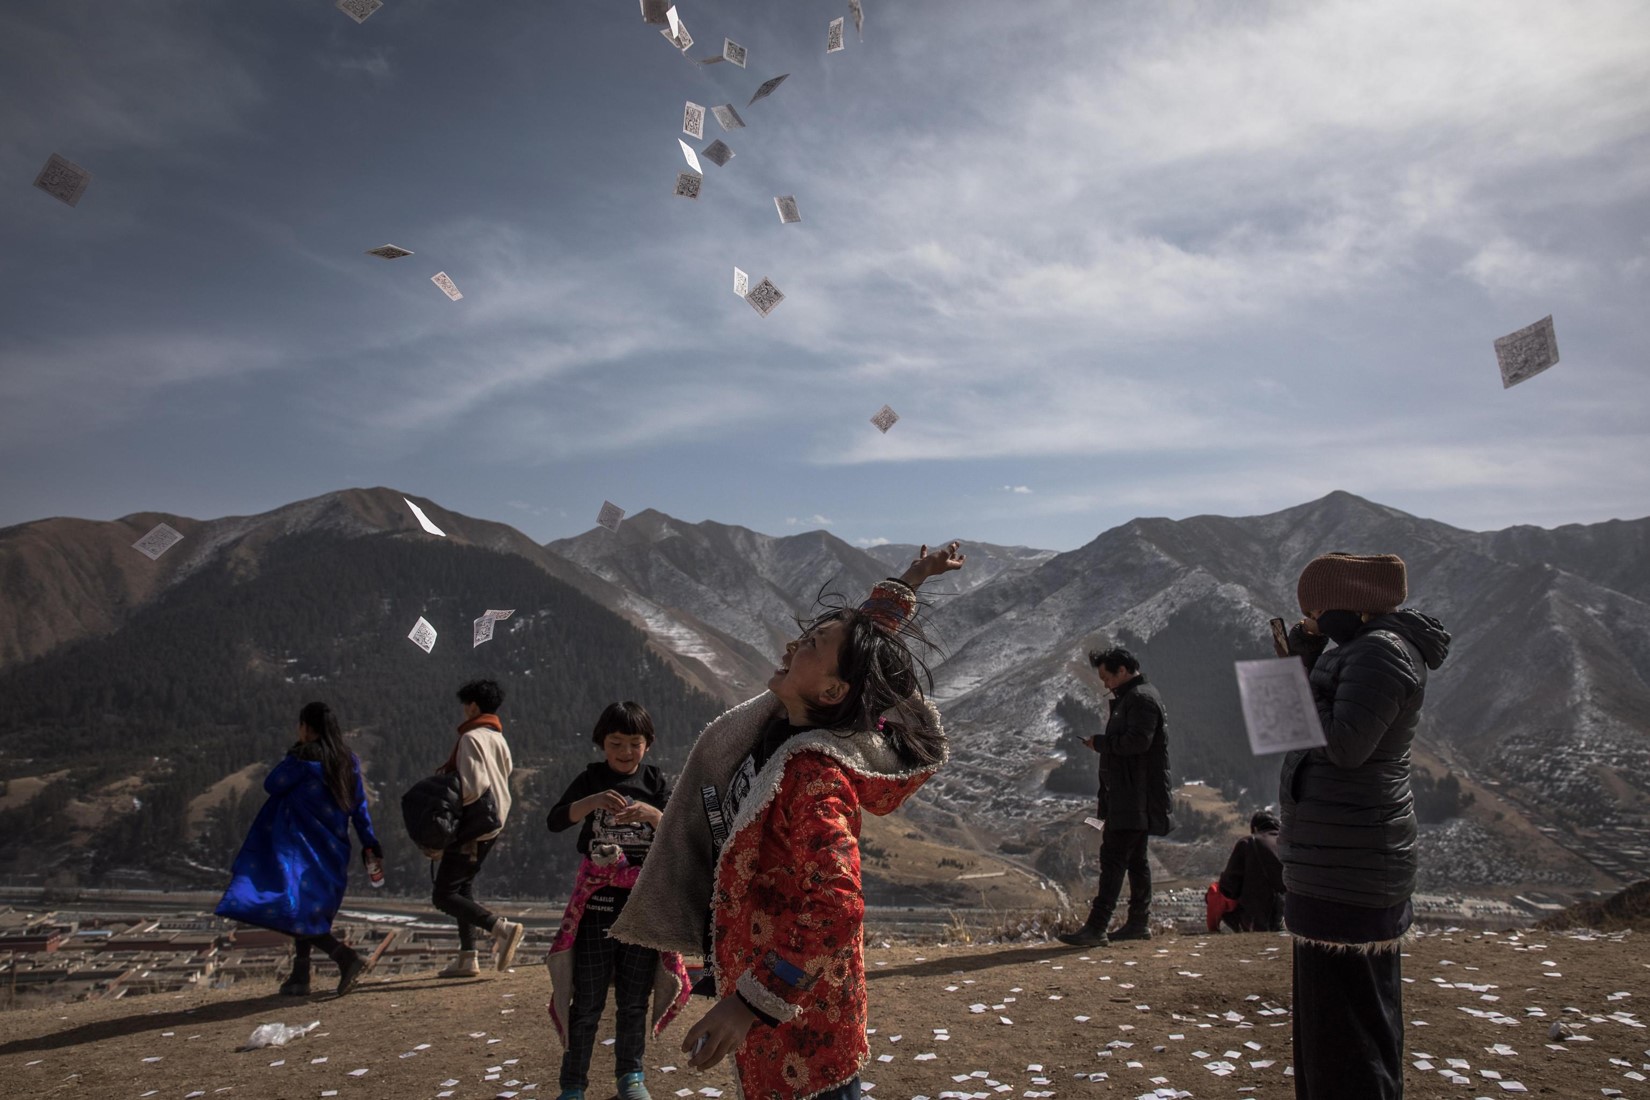 Una ragazza tibetana getta in aria un foglio con preghiere e speranze vicino al monastero di Labrang